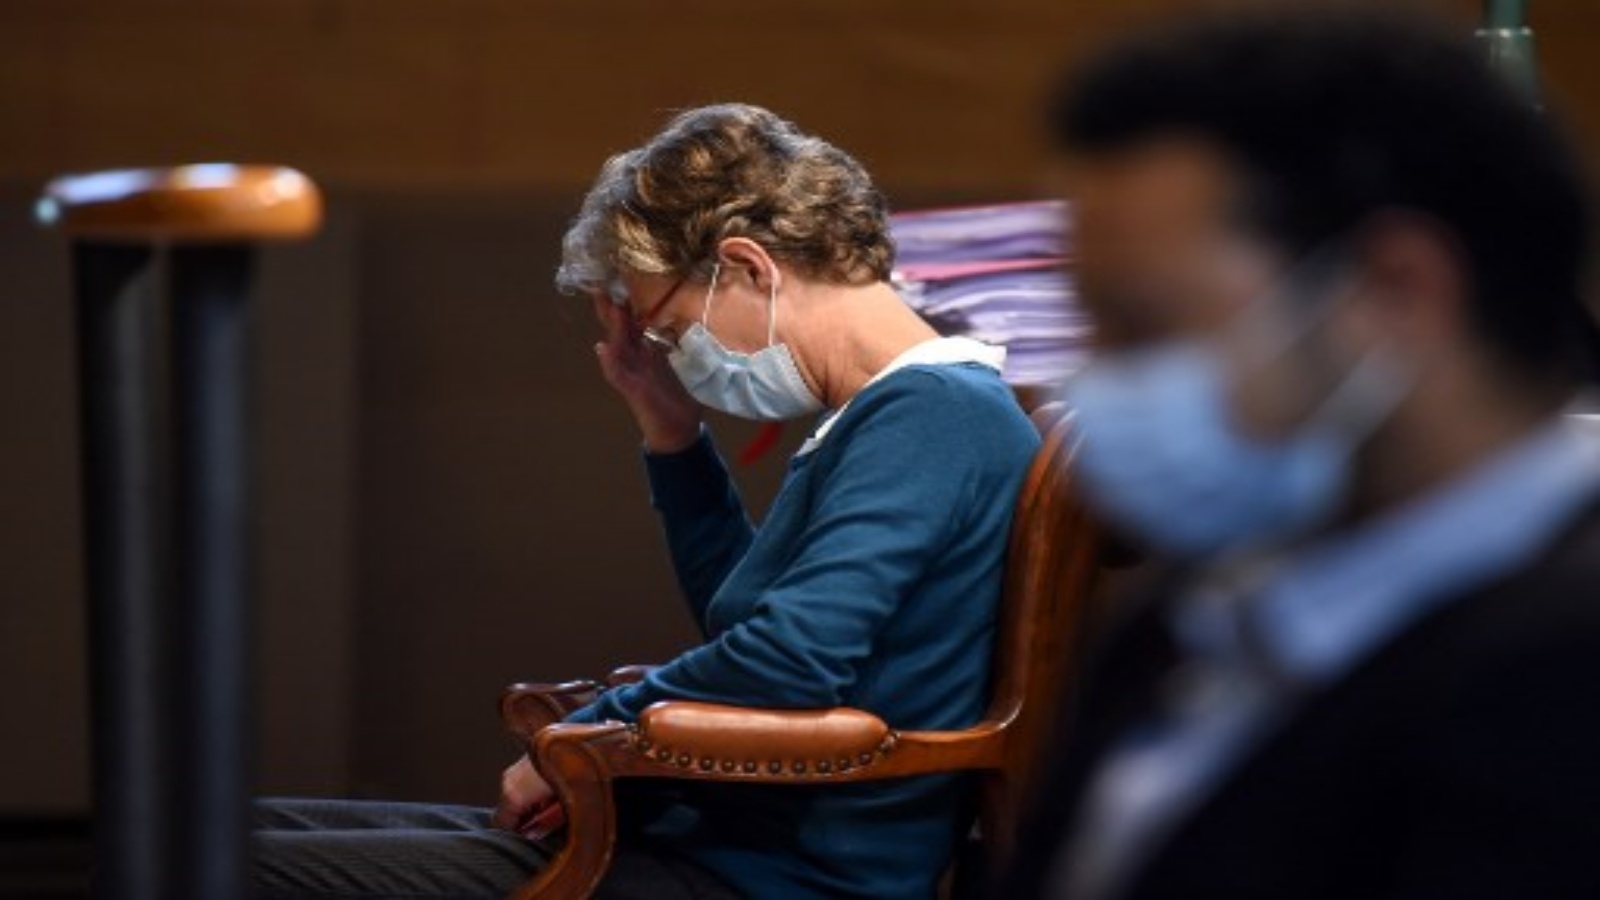 أخصائية التخدير البلجيكية هيلجا ووترز تجلس في قاعة المحكمة في مدينة باو في 8 أكتوبر / تشرين الأول 2020 ، قبل لحظات من بدء محاكمتها بتهمة القتل غير العمد